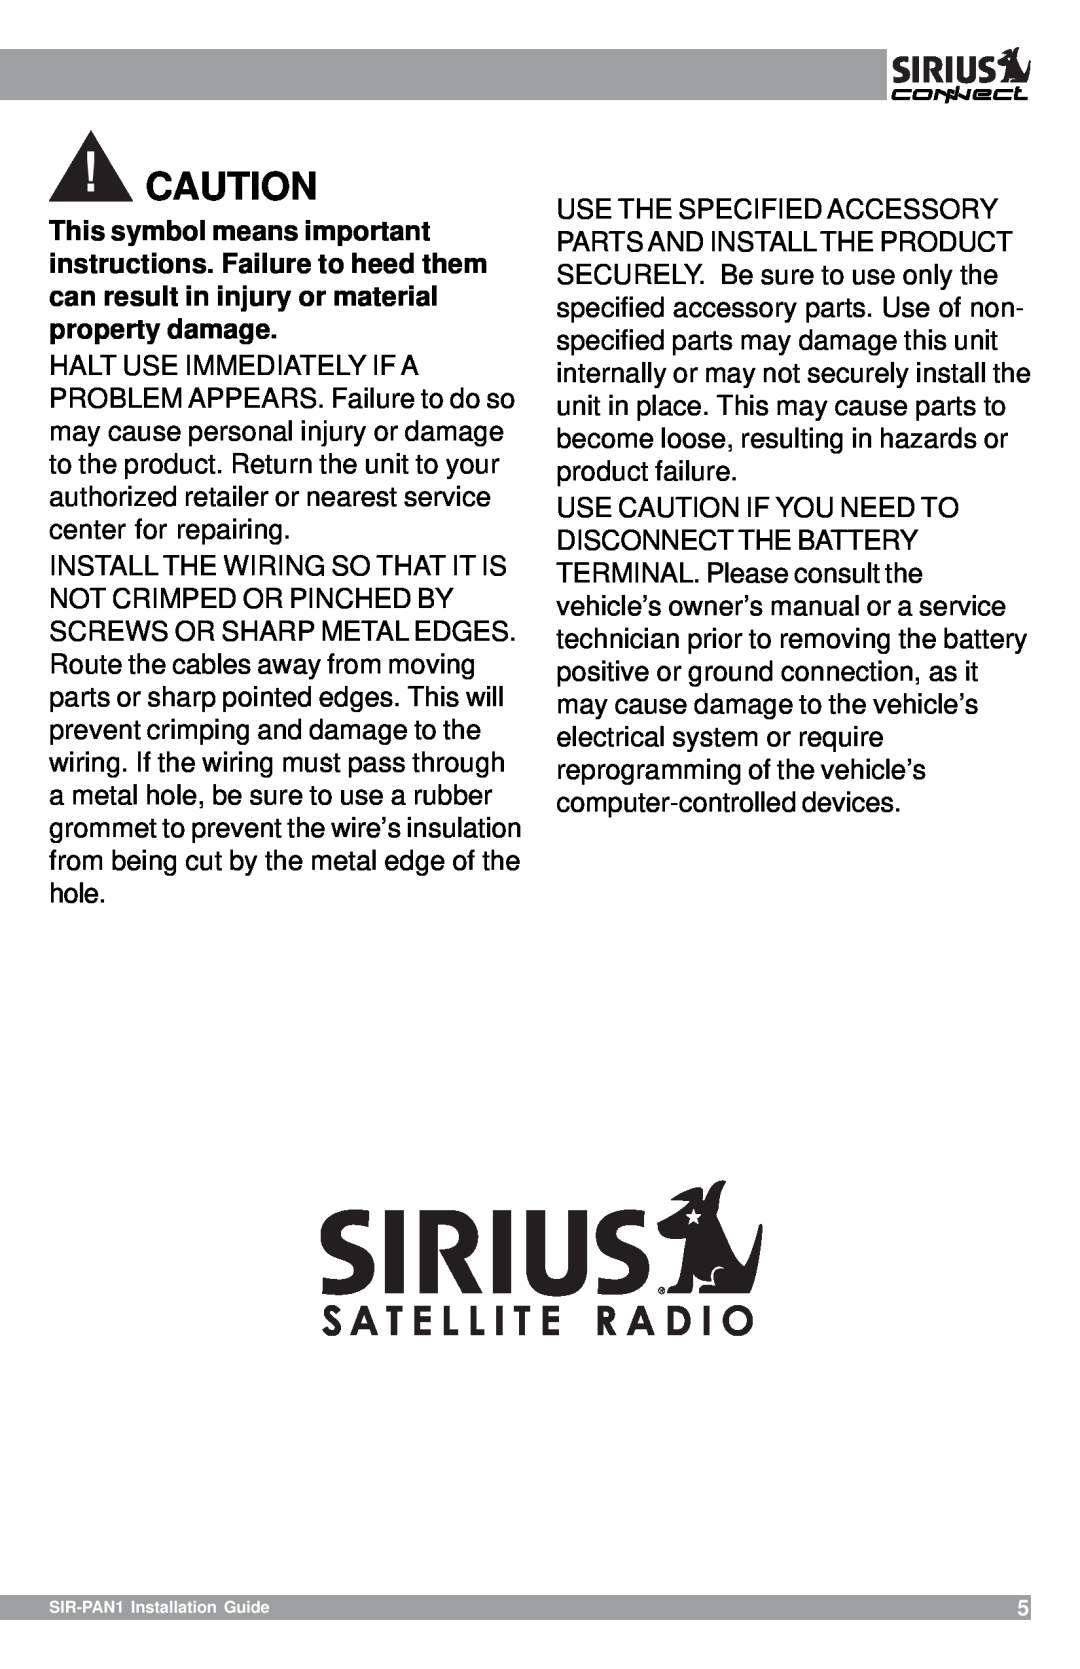 Sirius Satellite Radio SIR-PAN1 manual 